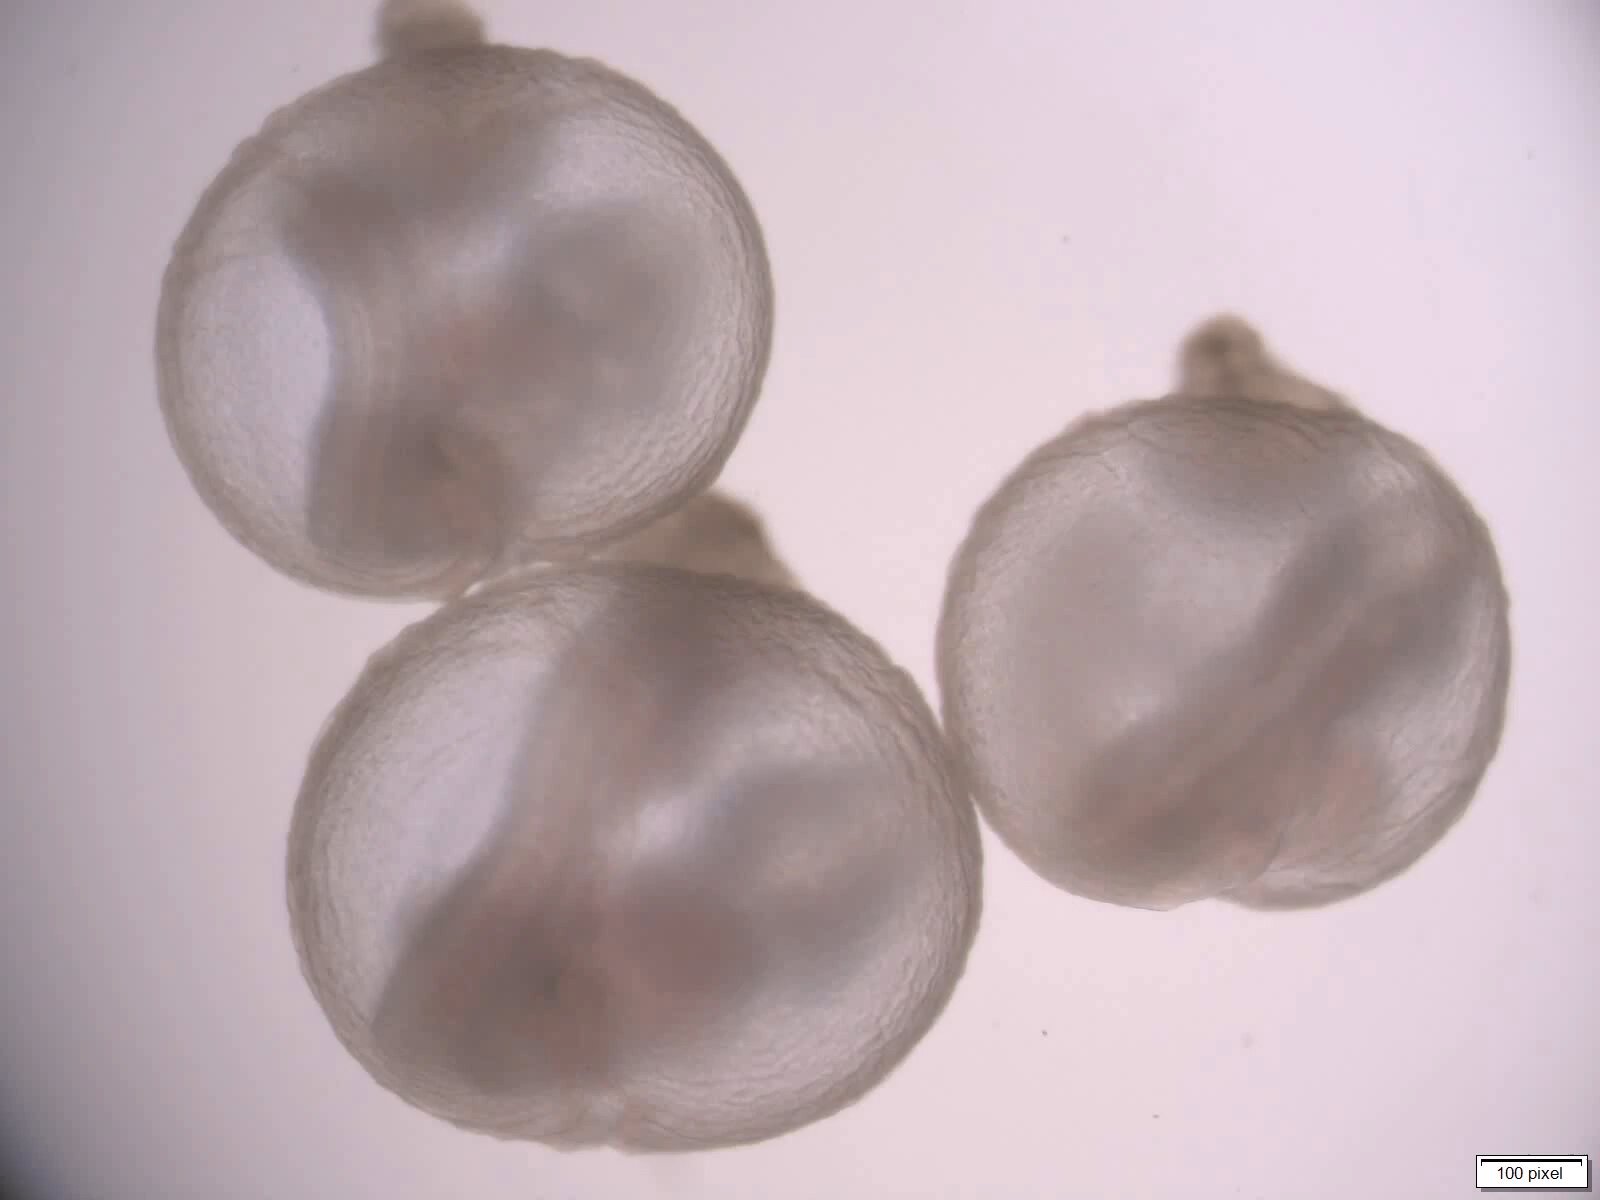  Embrioni de șoareci crescuți într-un uter mecanic